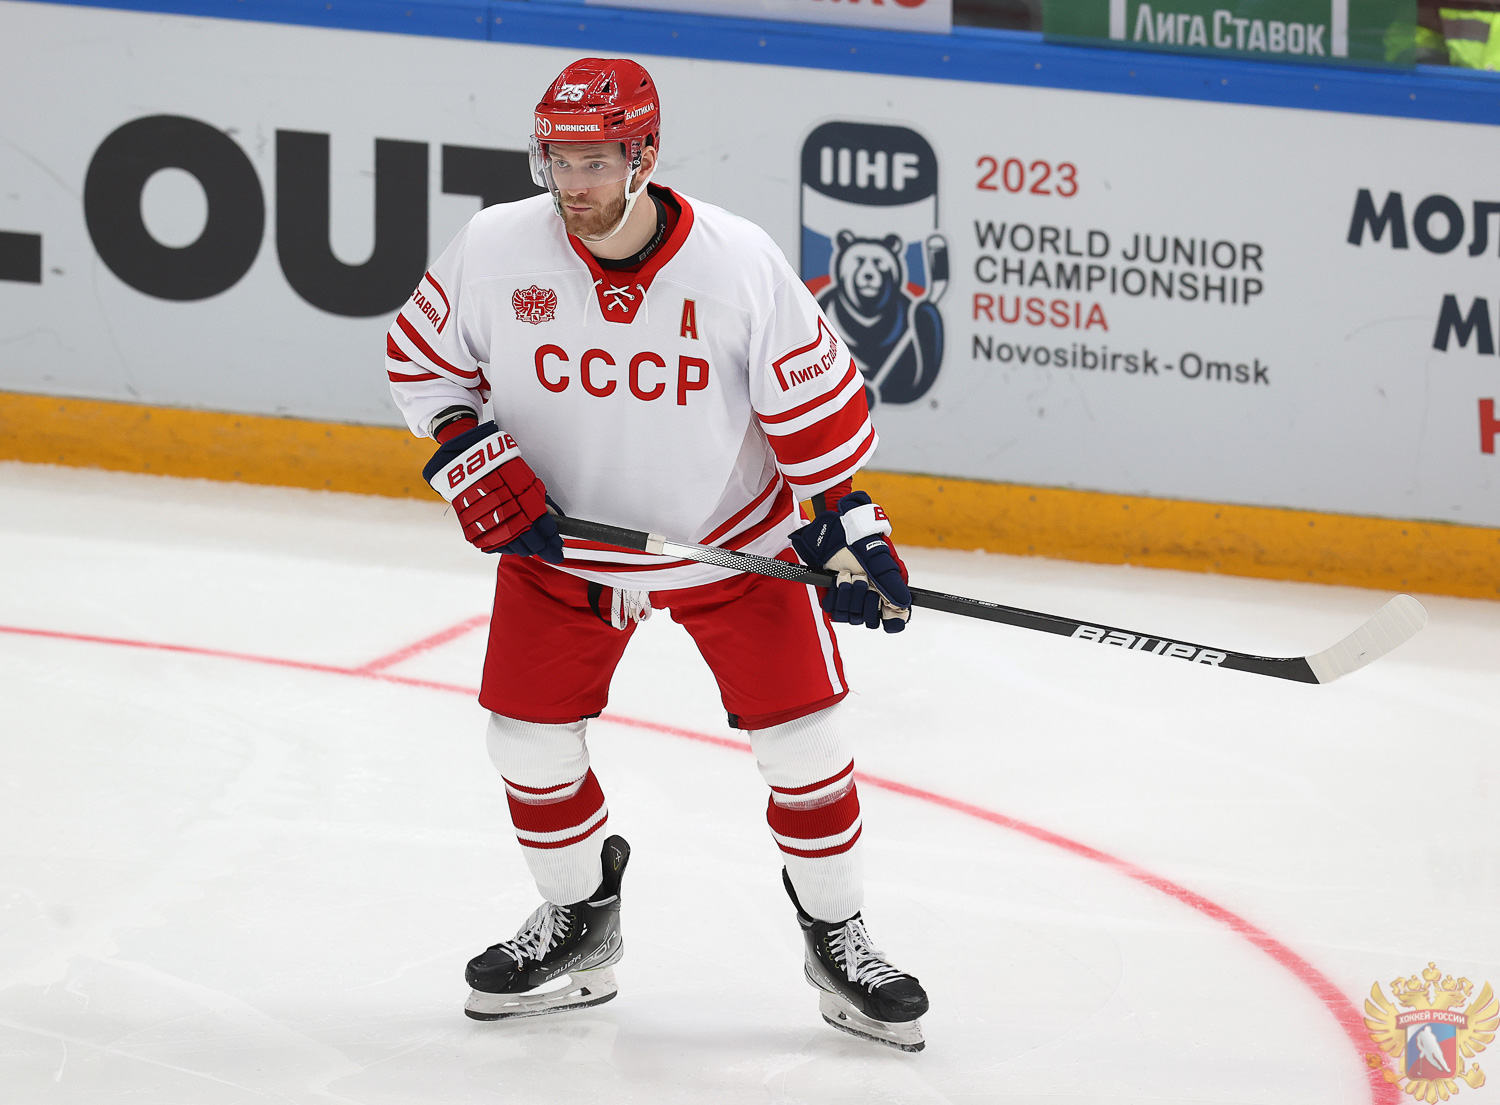 Сборная России вышла на хоккейный матч в форме СССР и опозорилась... Можем повторить. видео